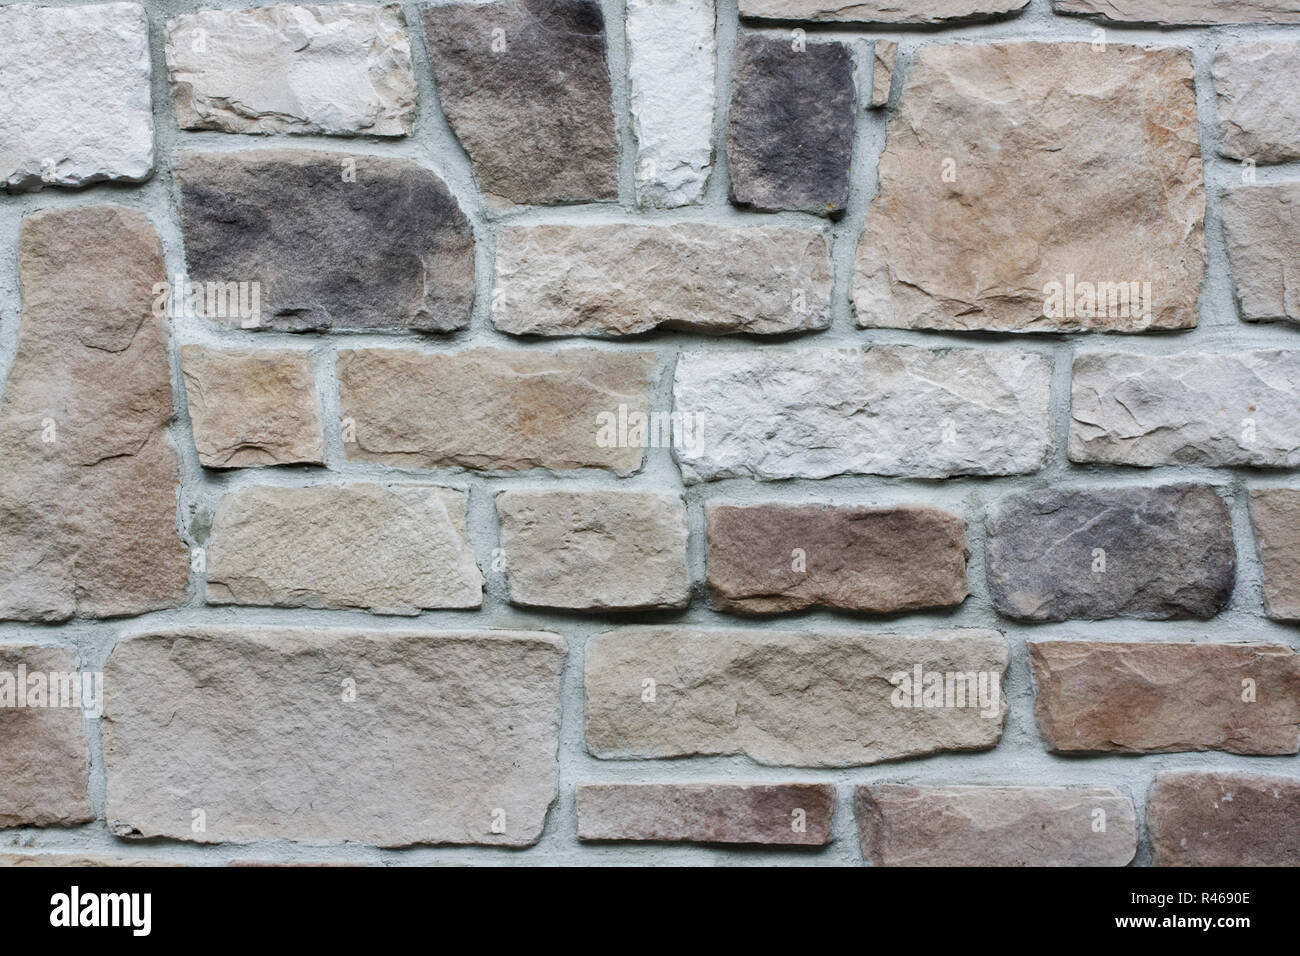 facing brickwork Stock Photo